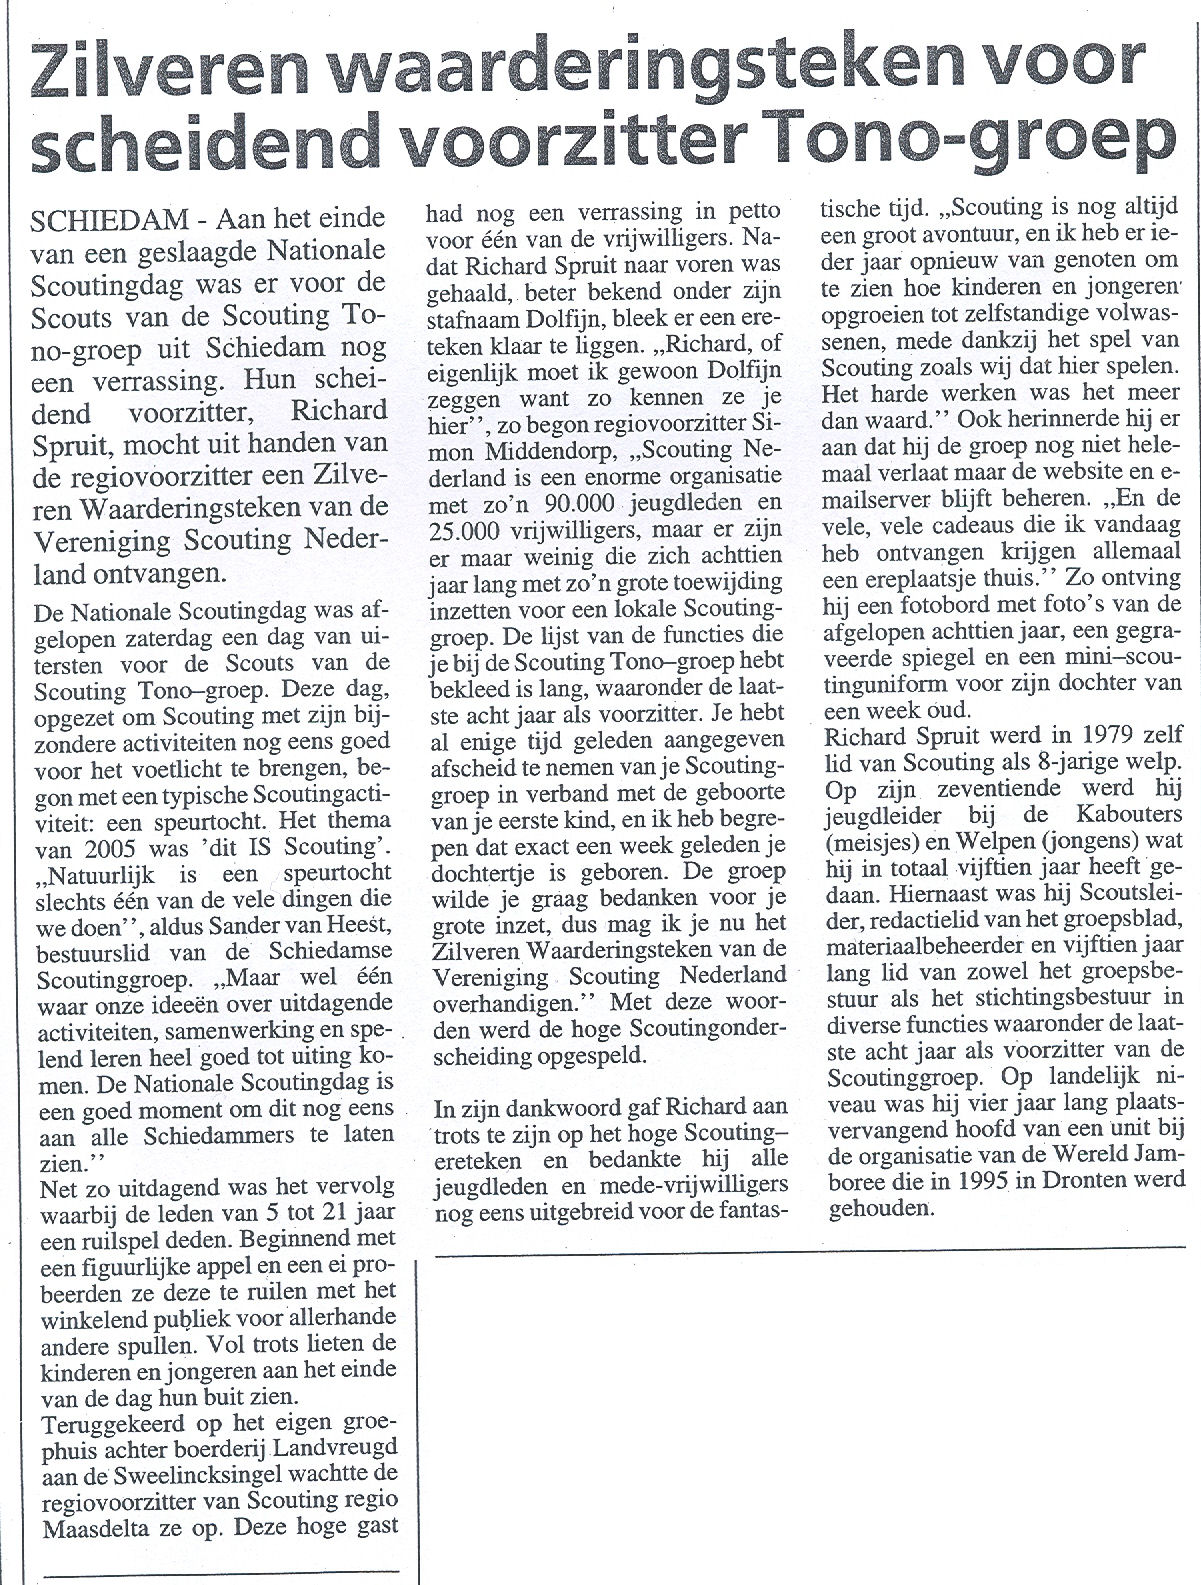 Maasstad weekbladen, editie Schiedam, pagina 11 van 23 maart 2005